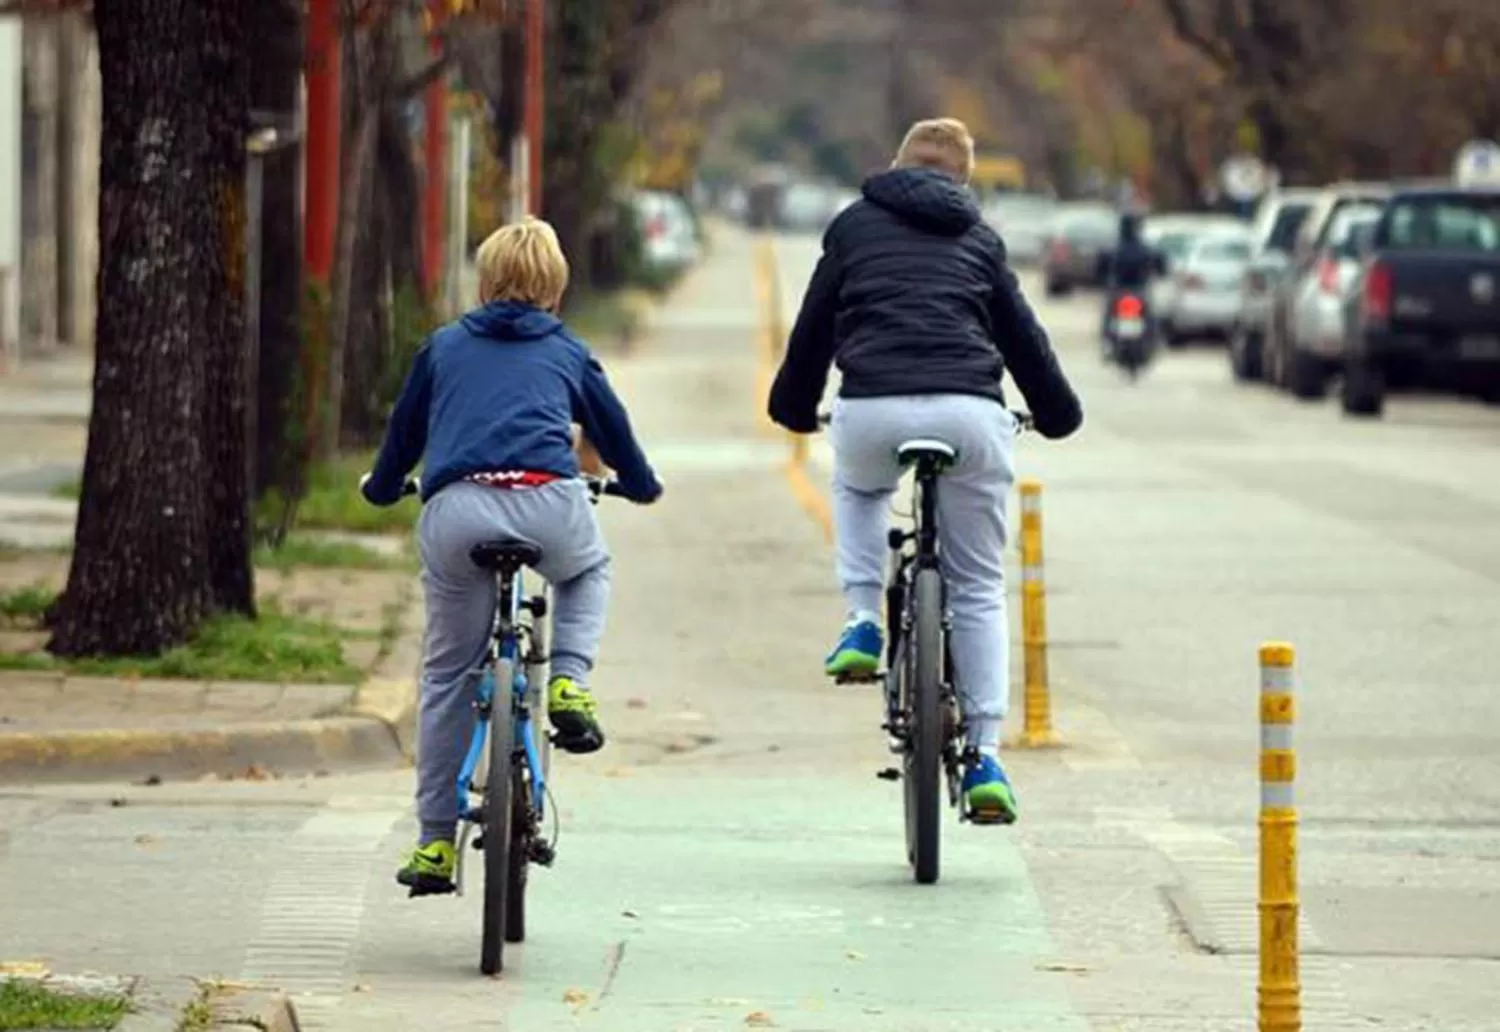 EN LA CIUDAD. Un proyecto de ordenanza apunta a promover el uso de bicicletas.